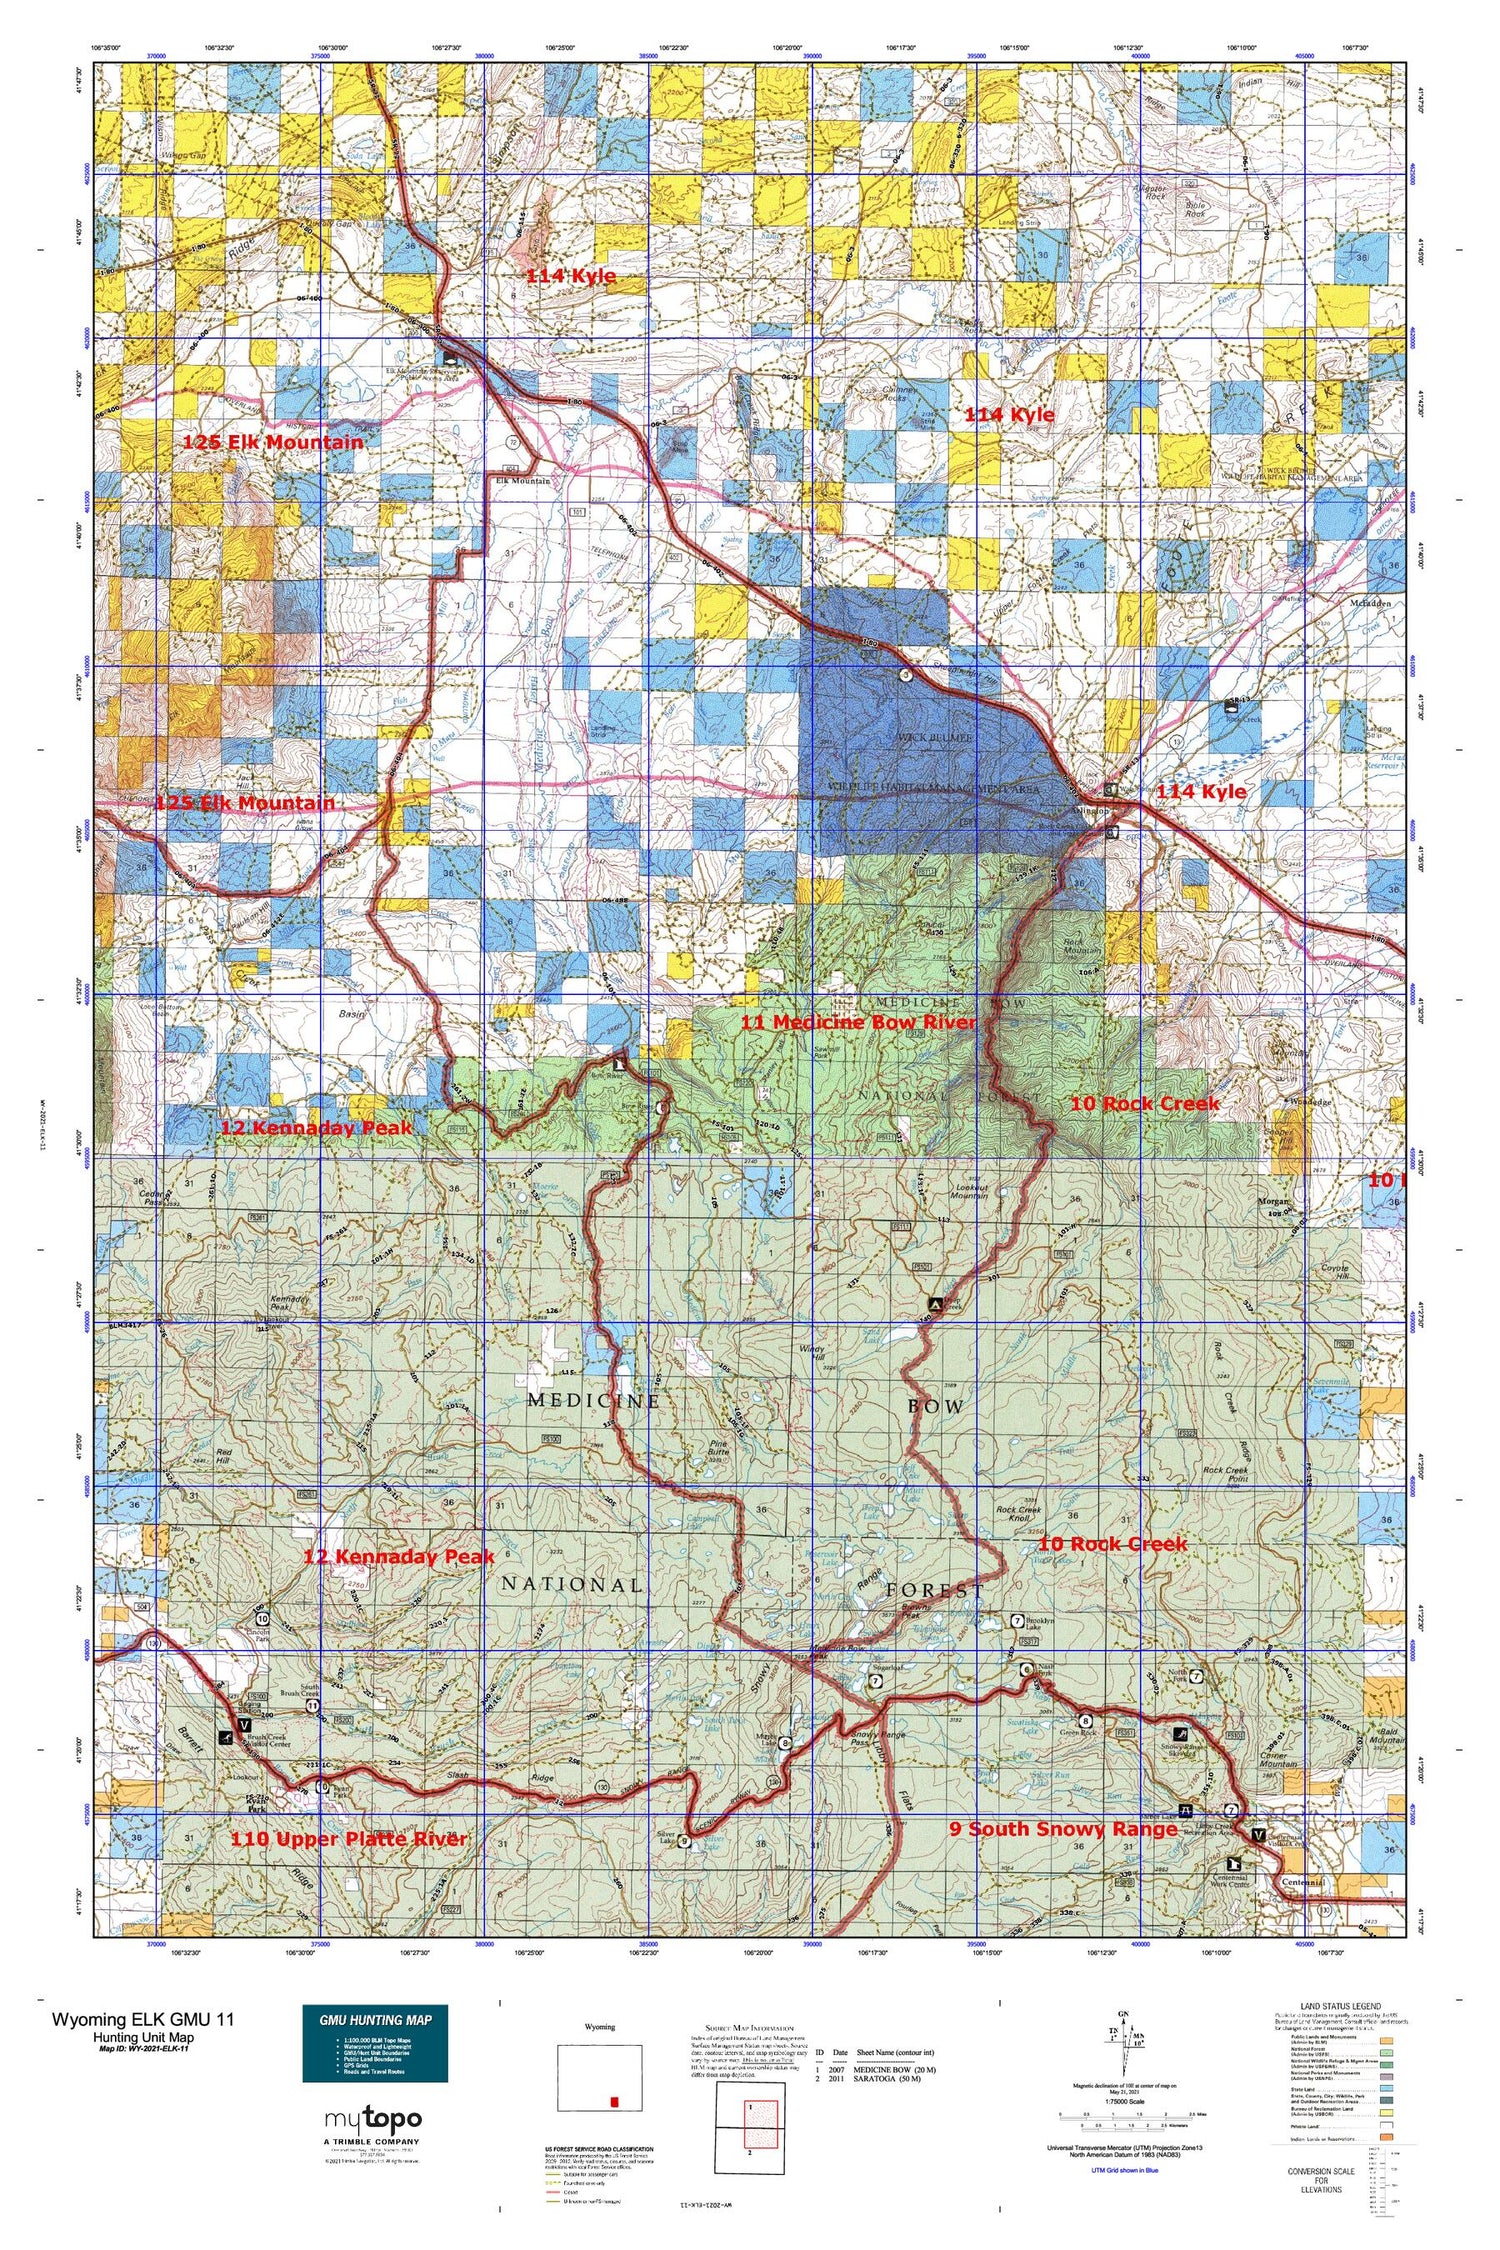 Wyoming Elk GMU 11 Map Image